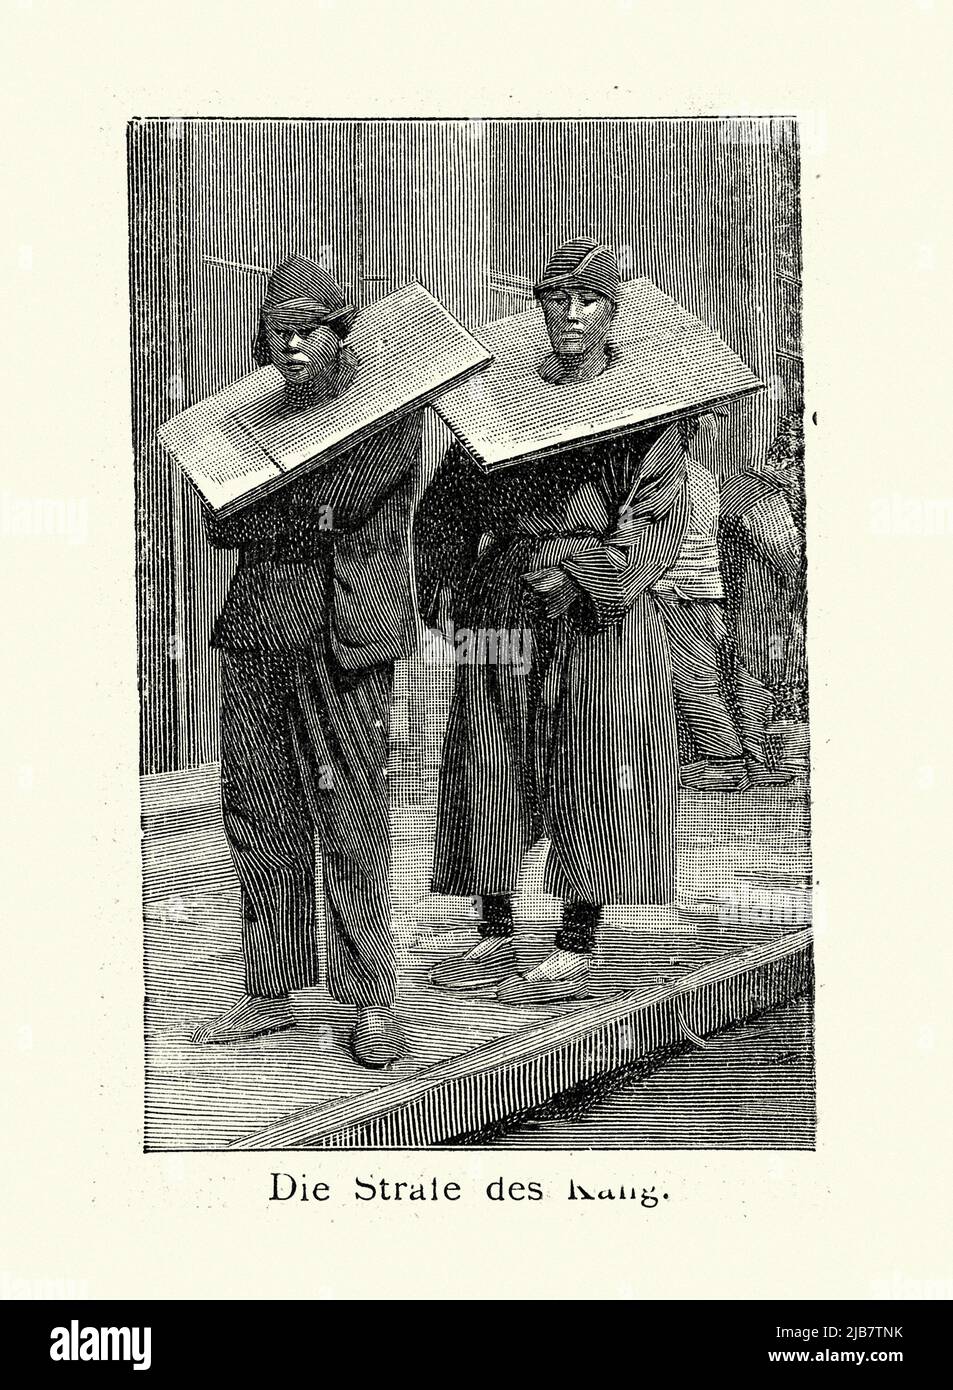 Ilustración vintage de los hombres castigados por un crimen en un pillaje, China, siglo 19th Foto de stock